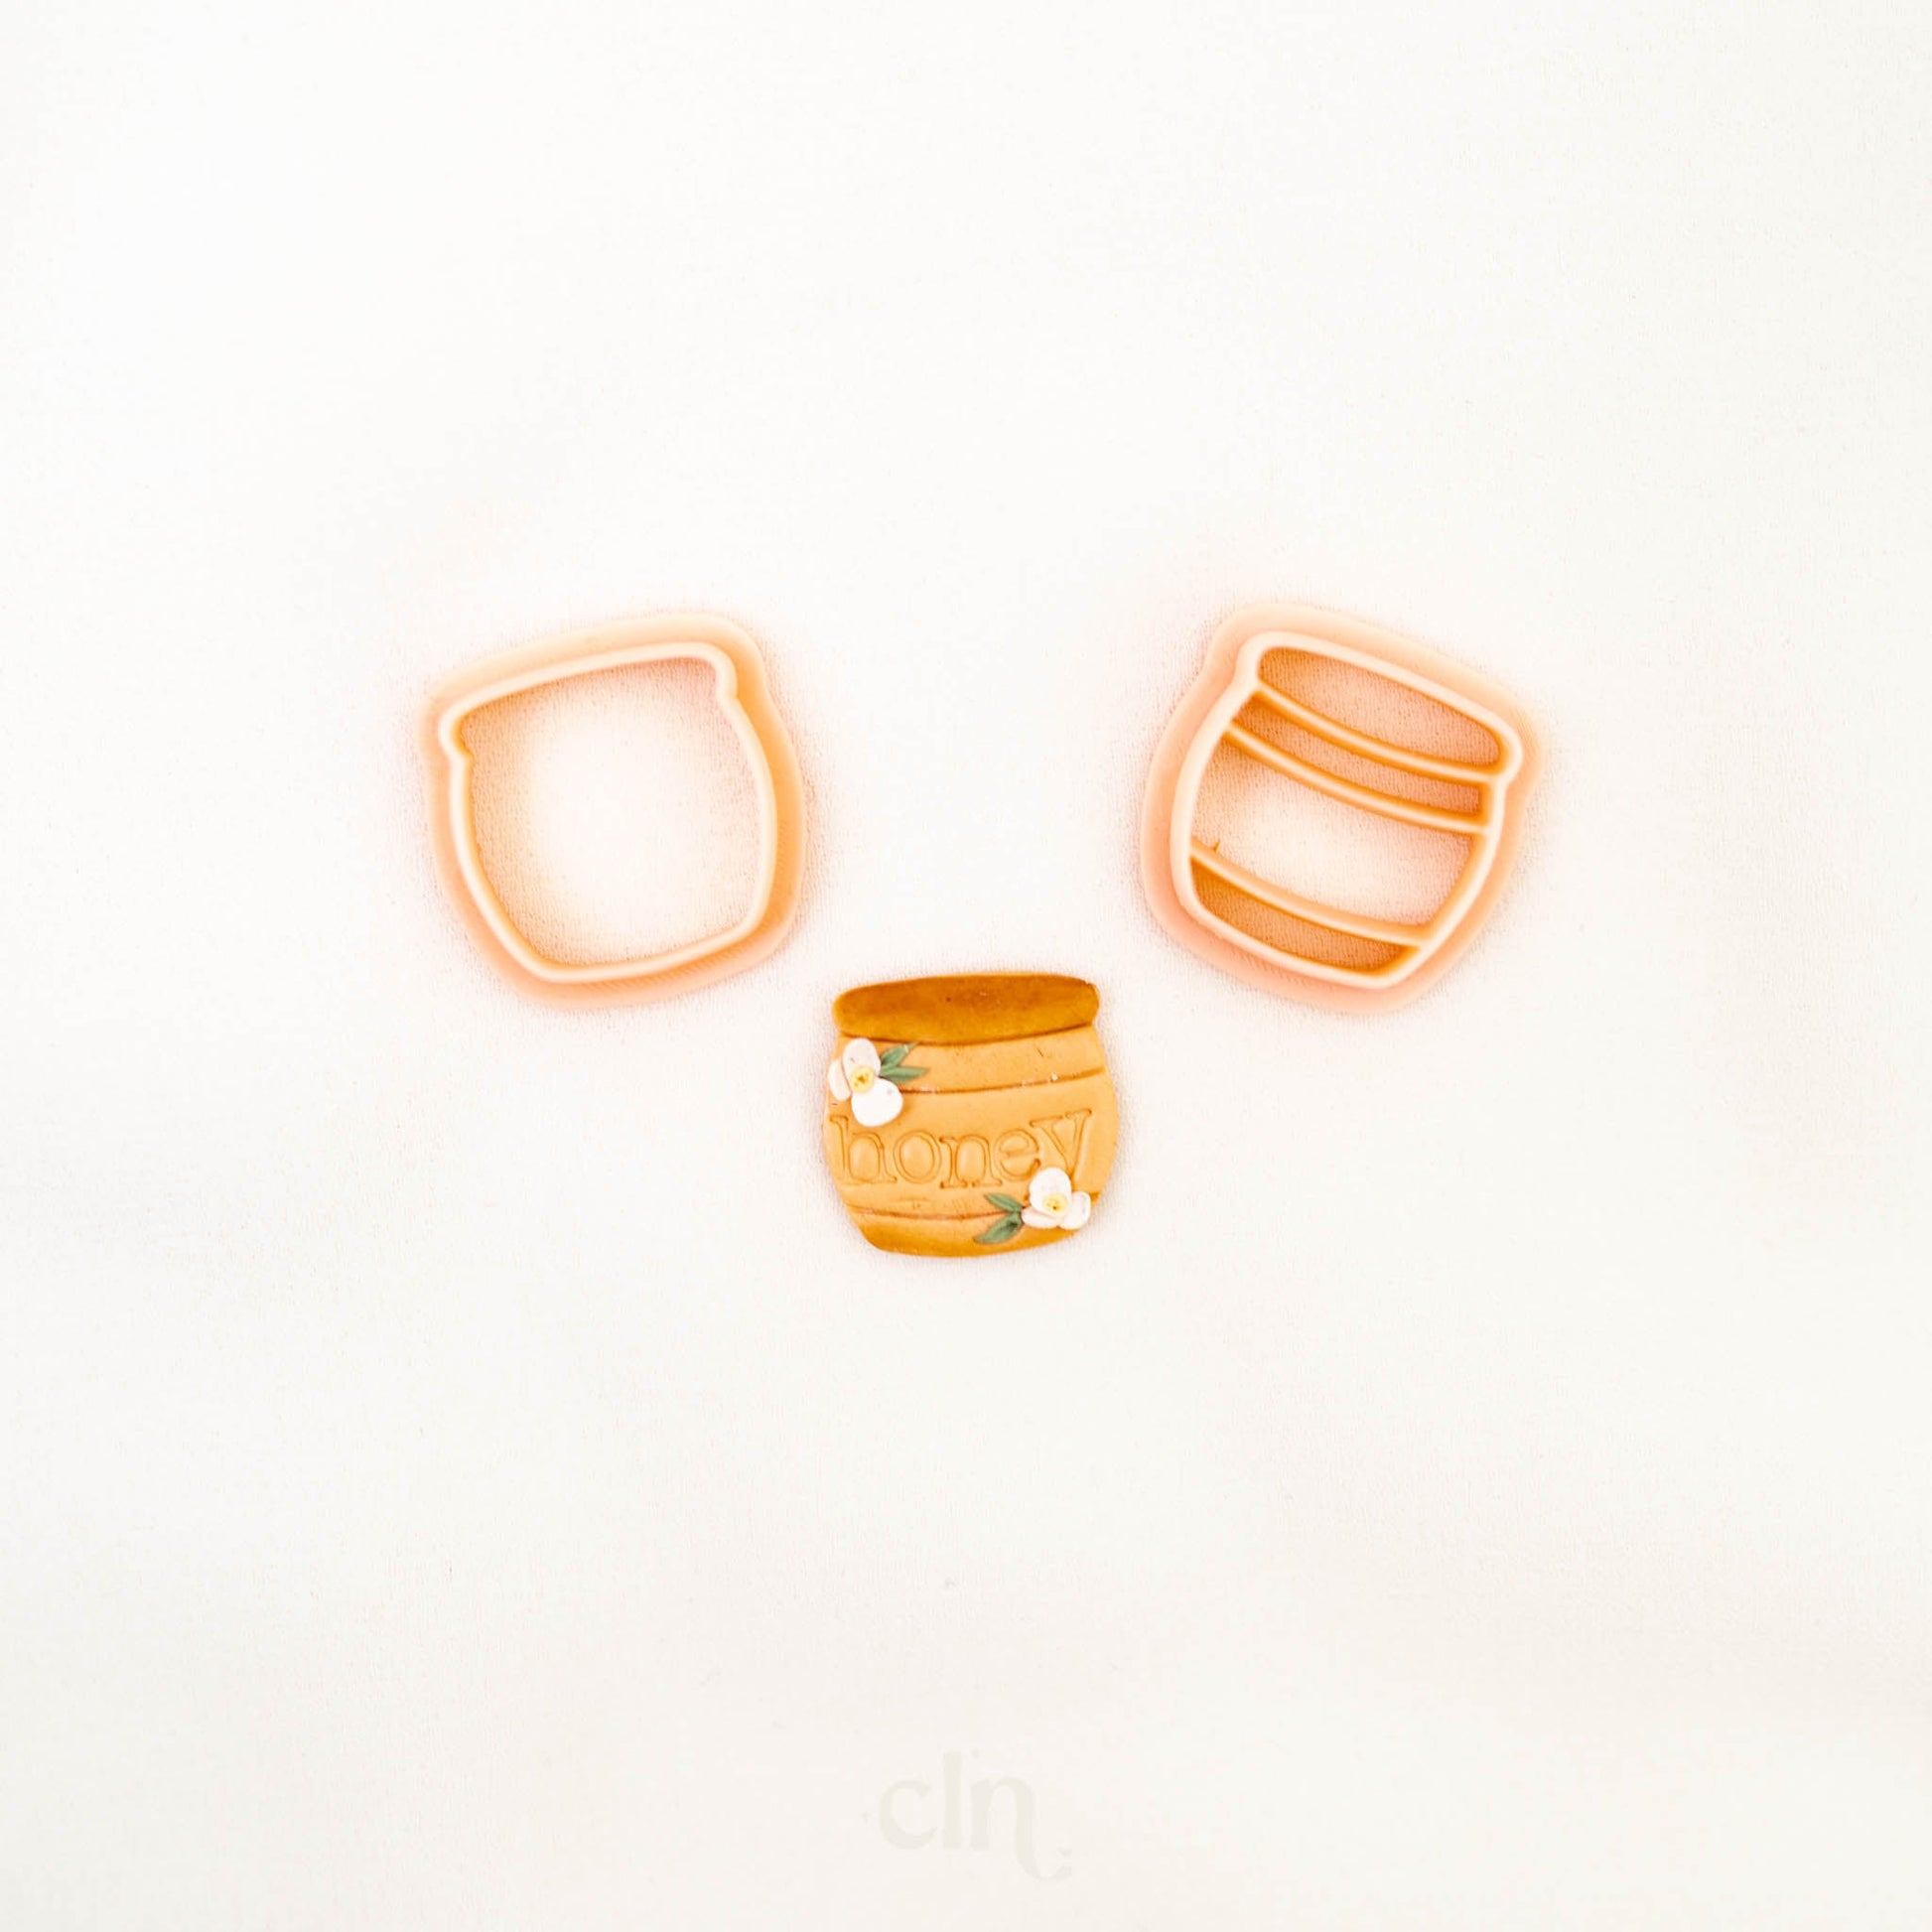 Honey jar - Cutter - CLN Atelier